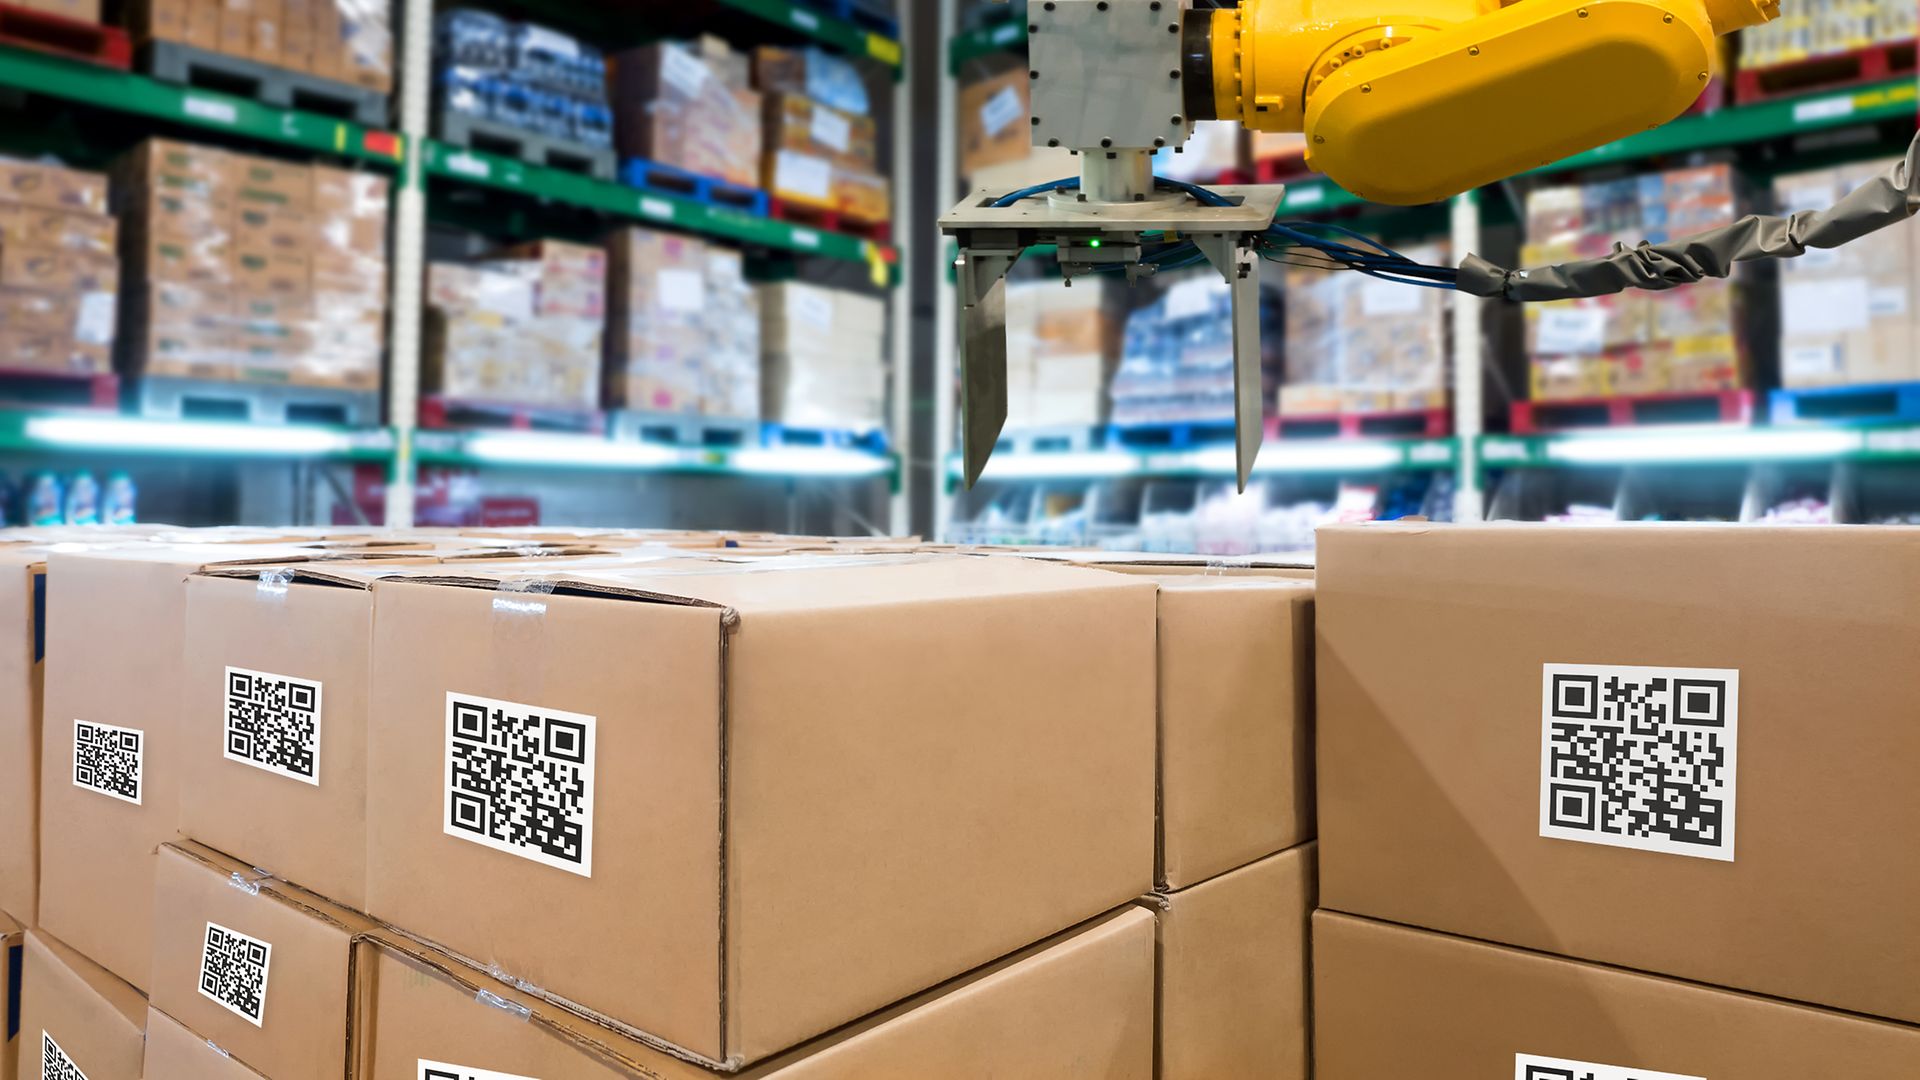 Digitalizzazione e automatizzazione dei magazzini permettono a Henkel di rendere la logistica più sostenibile.